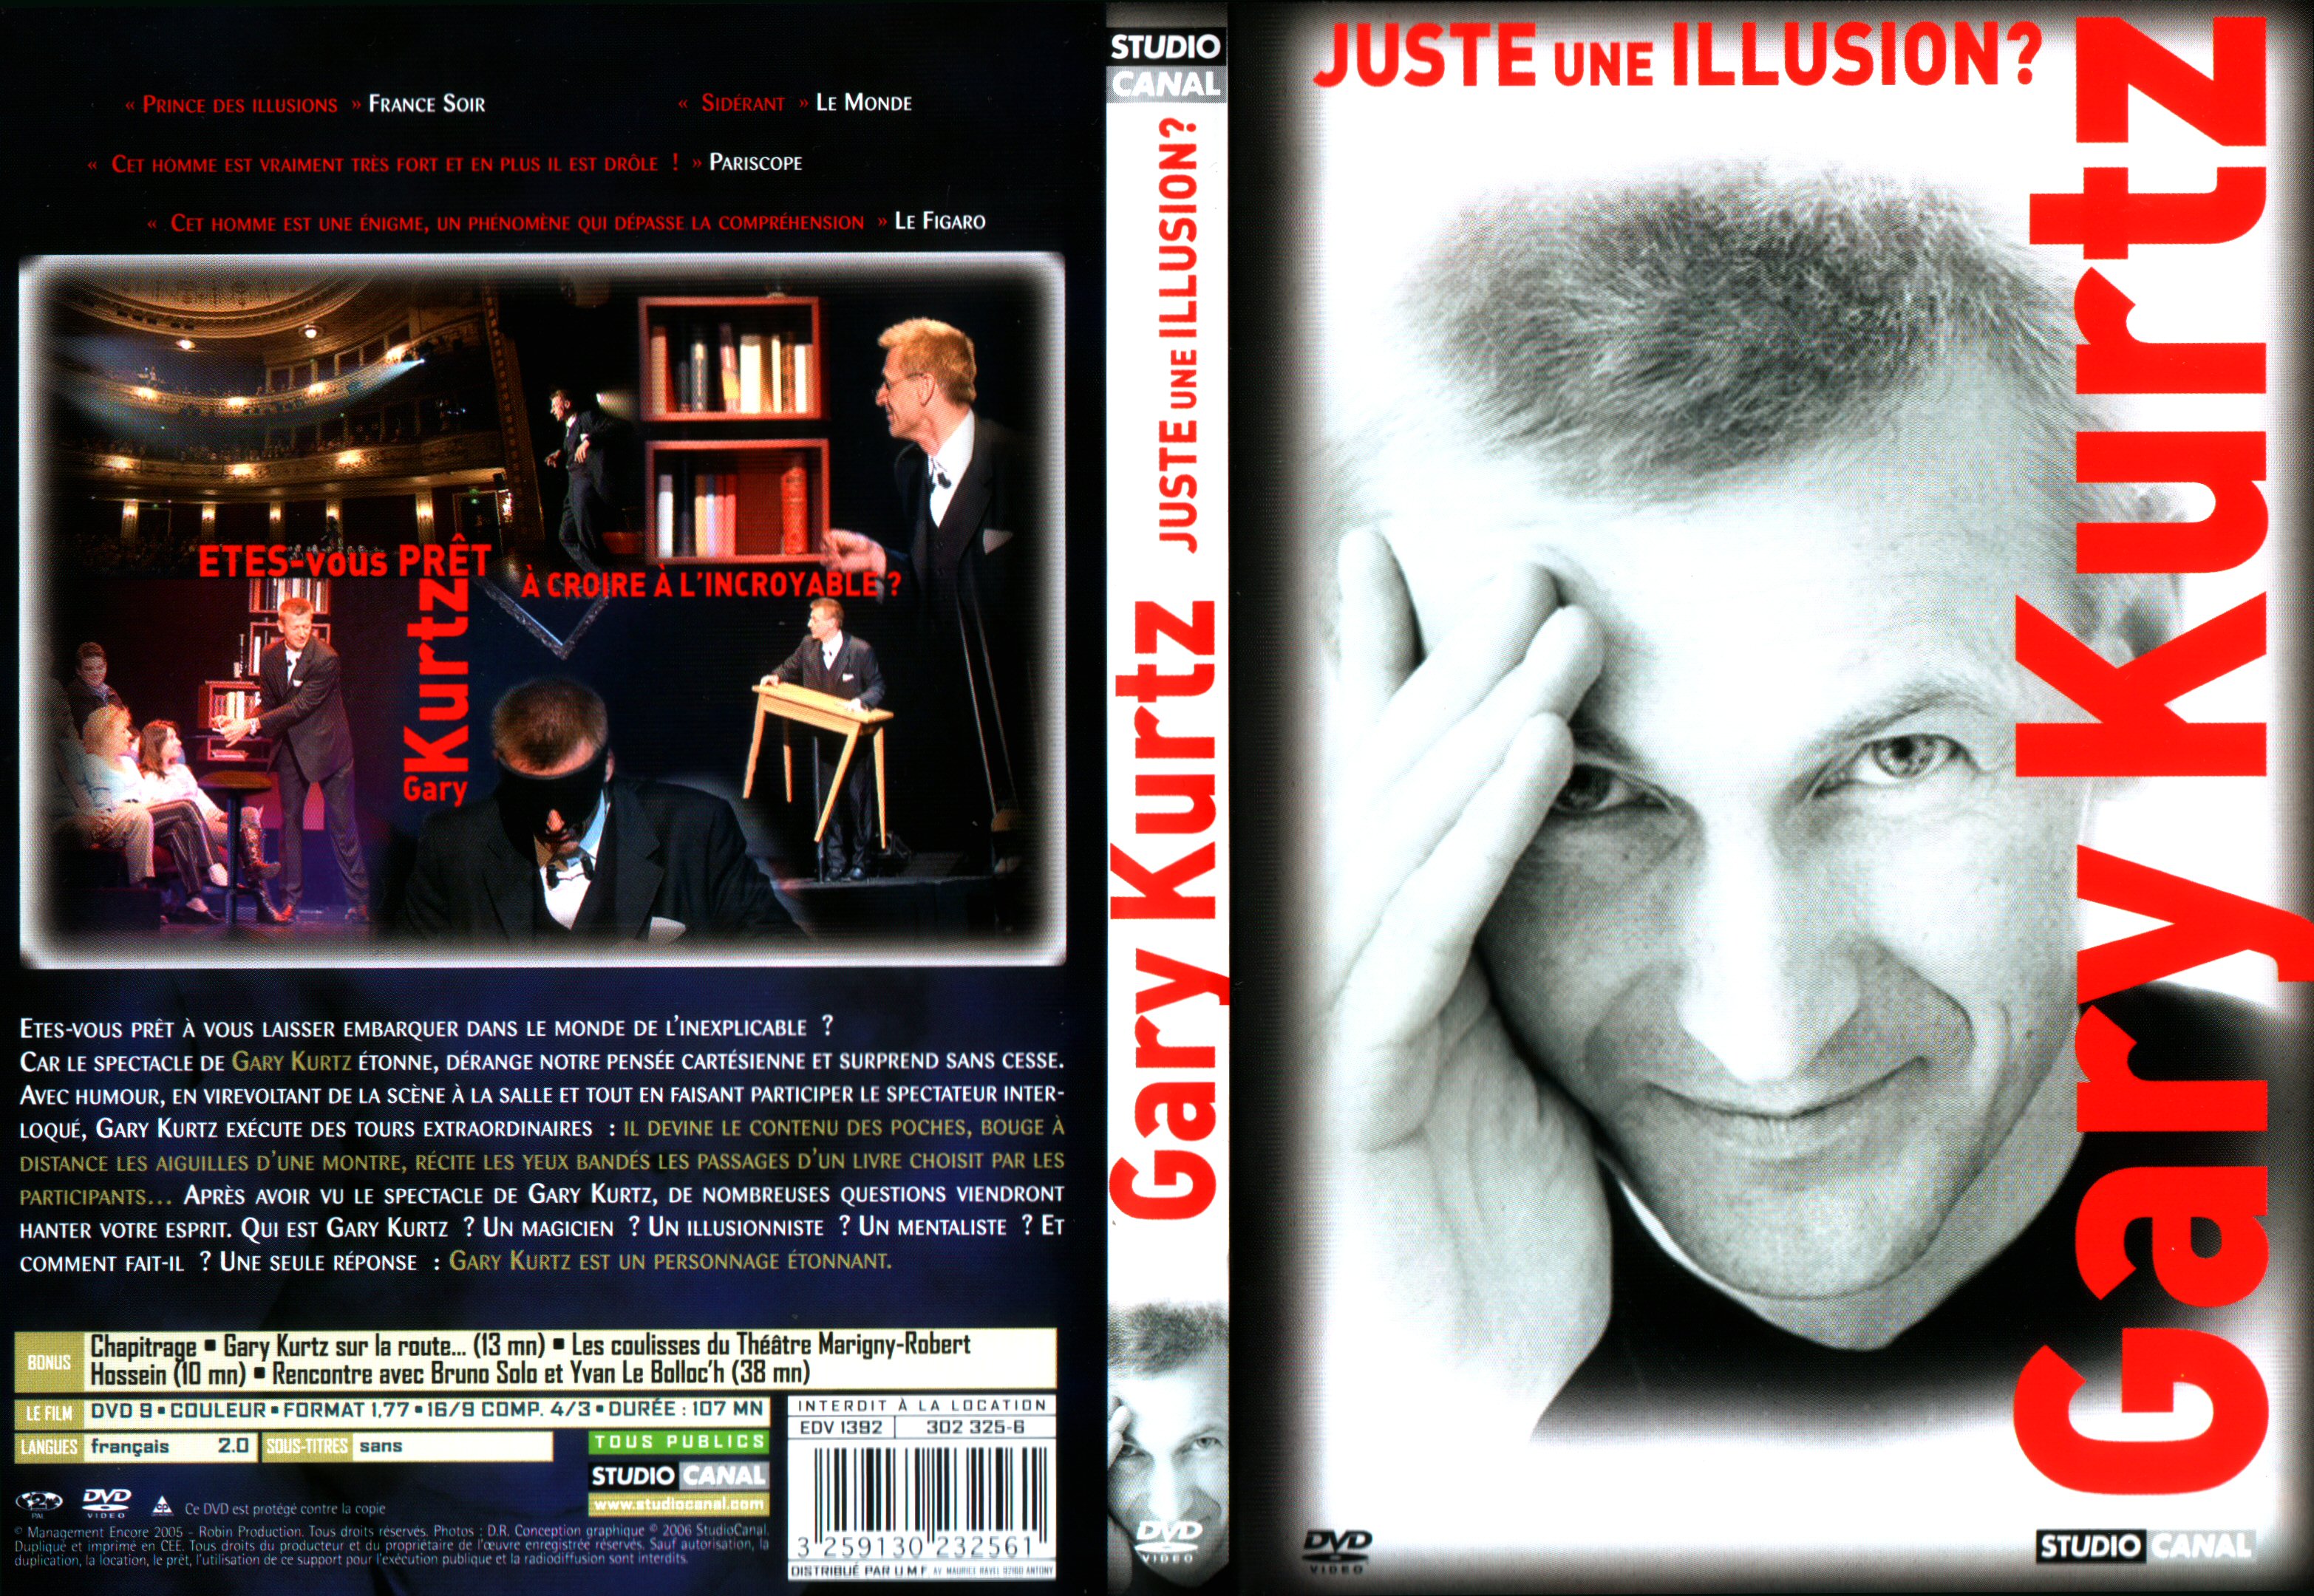 Jaquette DVD Gary Kurtz juste une illusion